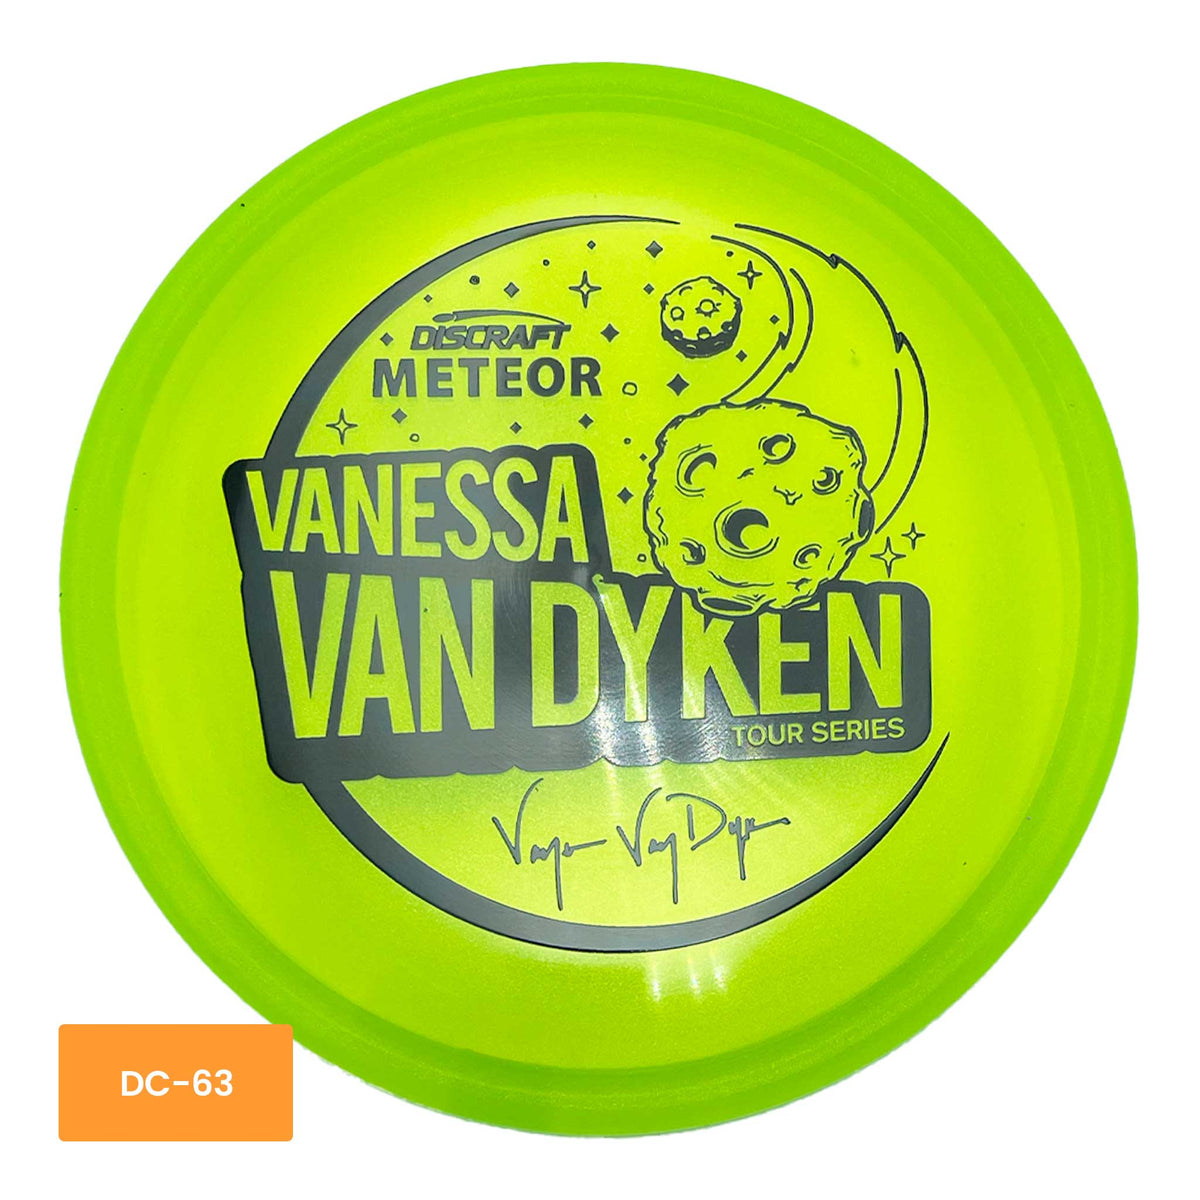 Discraft 2021 Vanessa Van Dyken Tour Series Meteor midrange